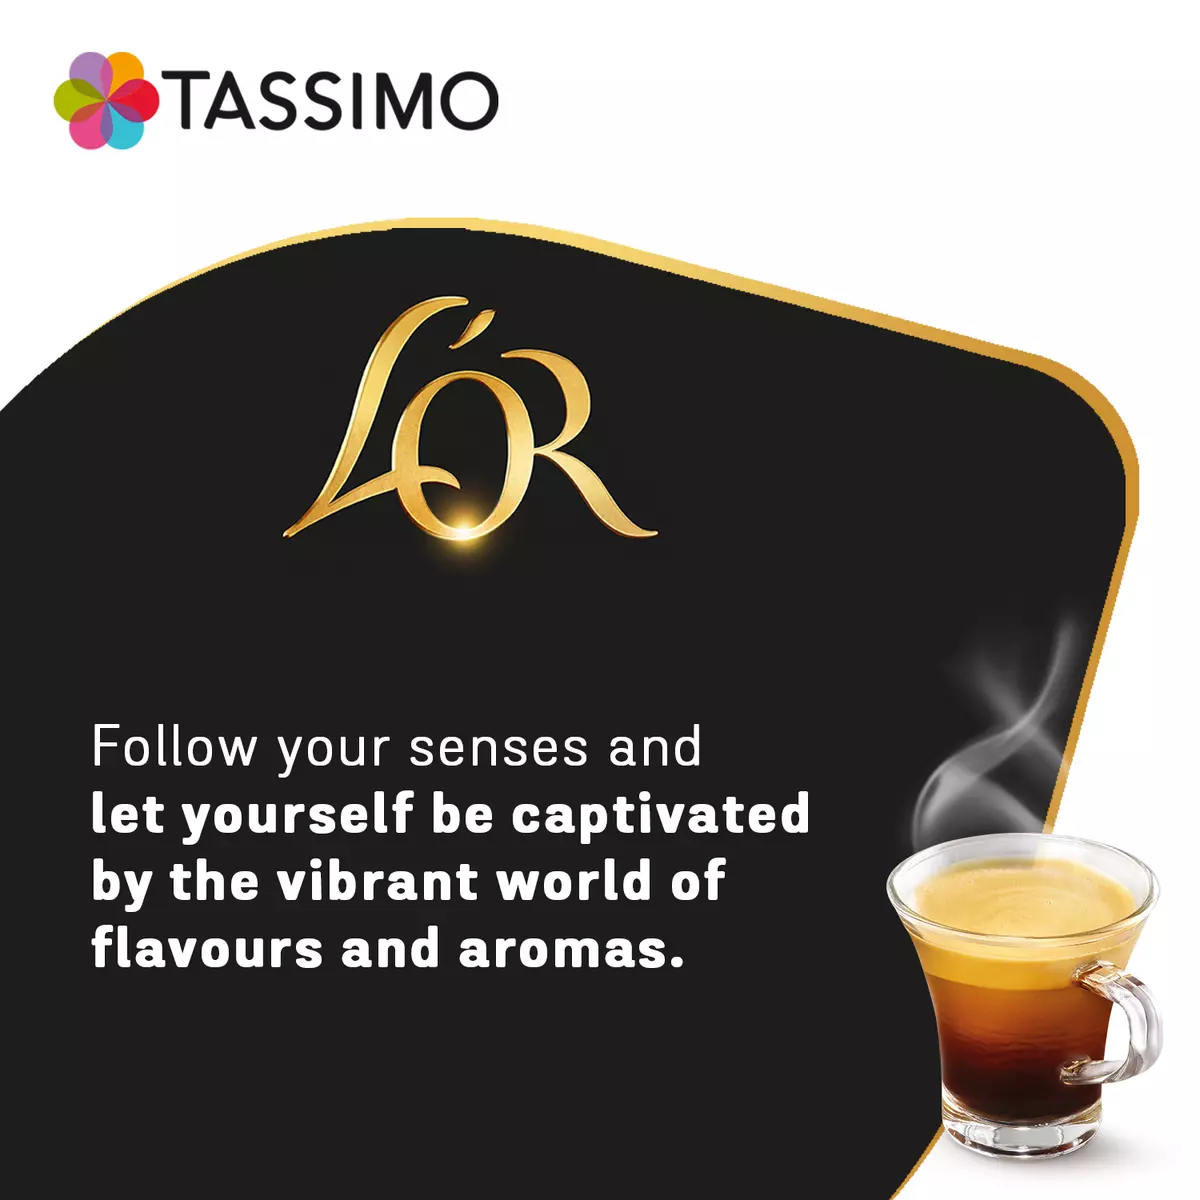 TASSIMO : L'Or Espresso - Dosettes de café espresso classique